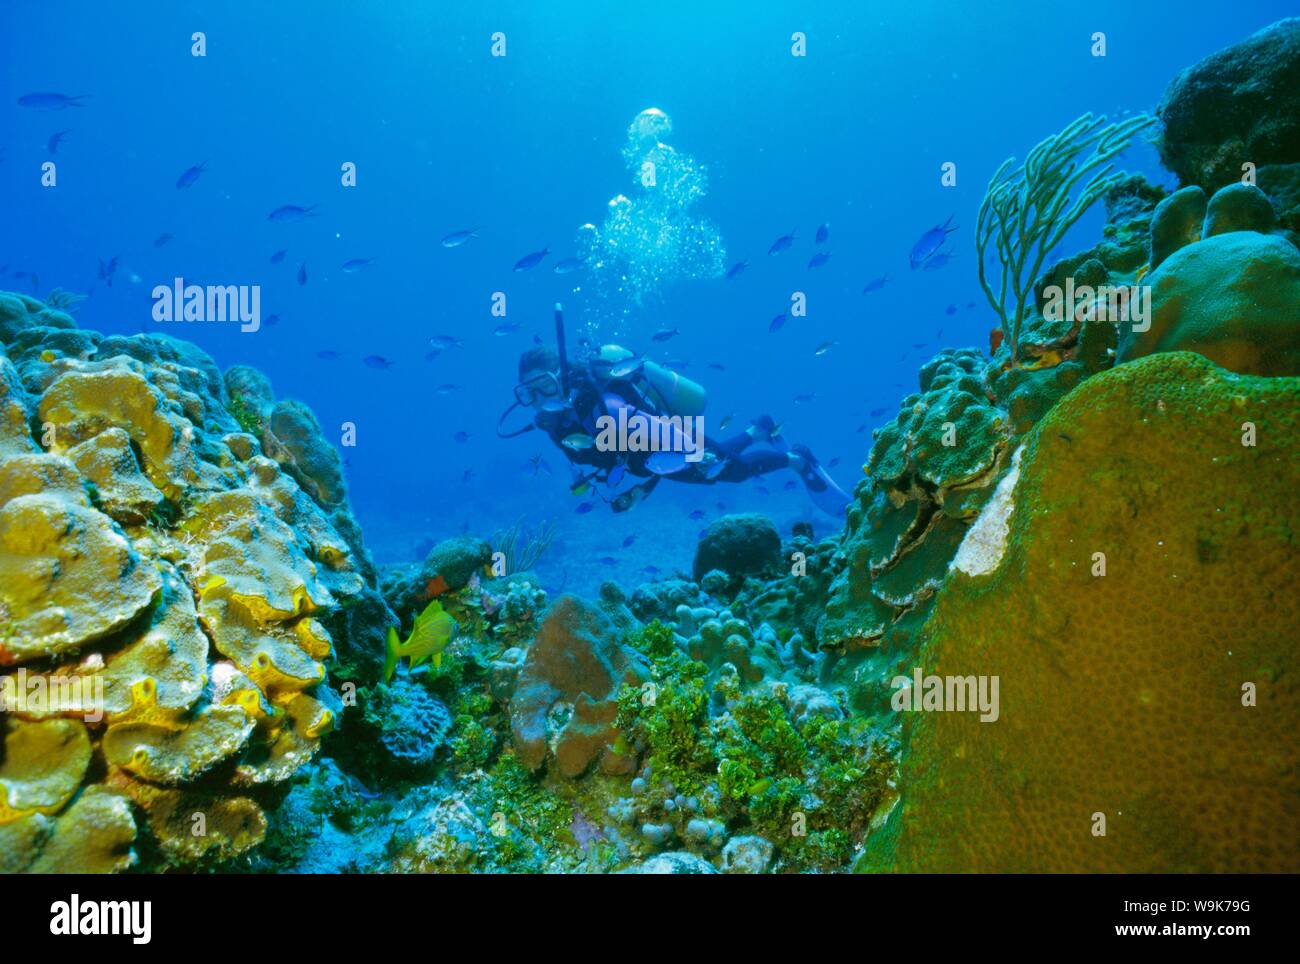 Buceador submarino y los arrecifes de coral, la isla de Cozumel, México Foto de stock